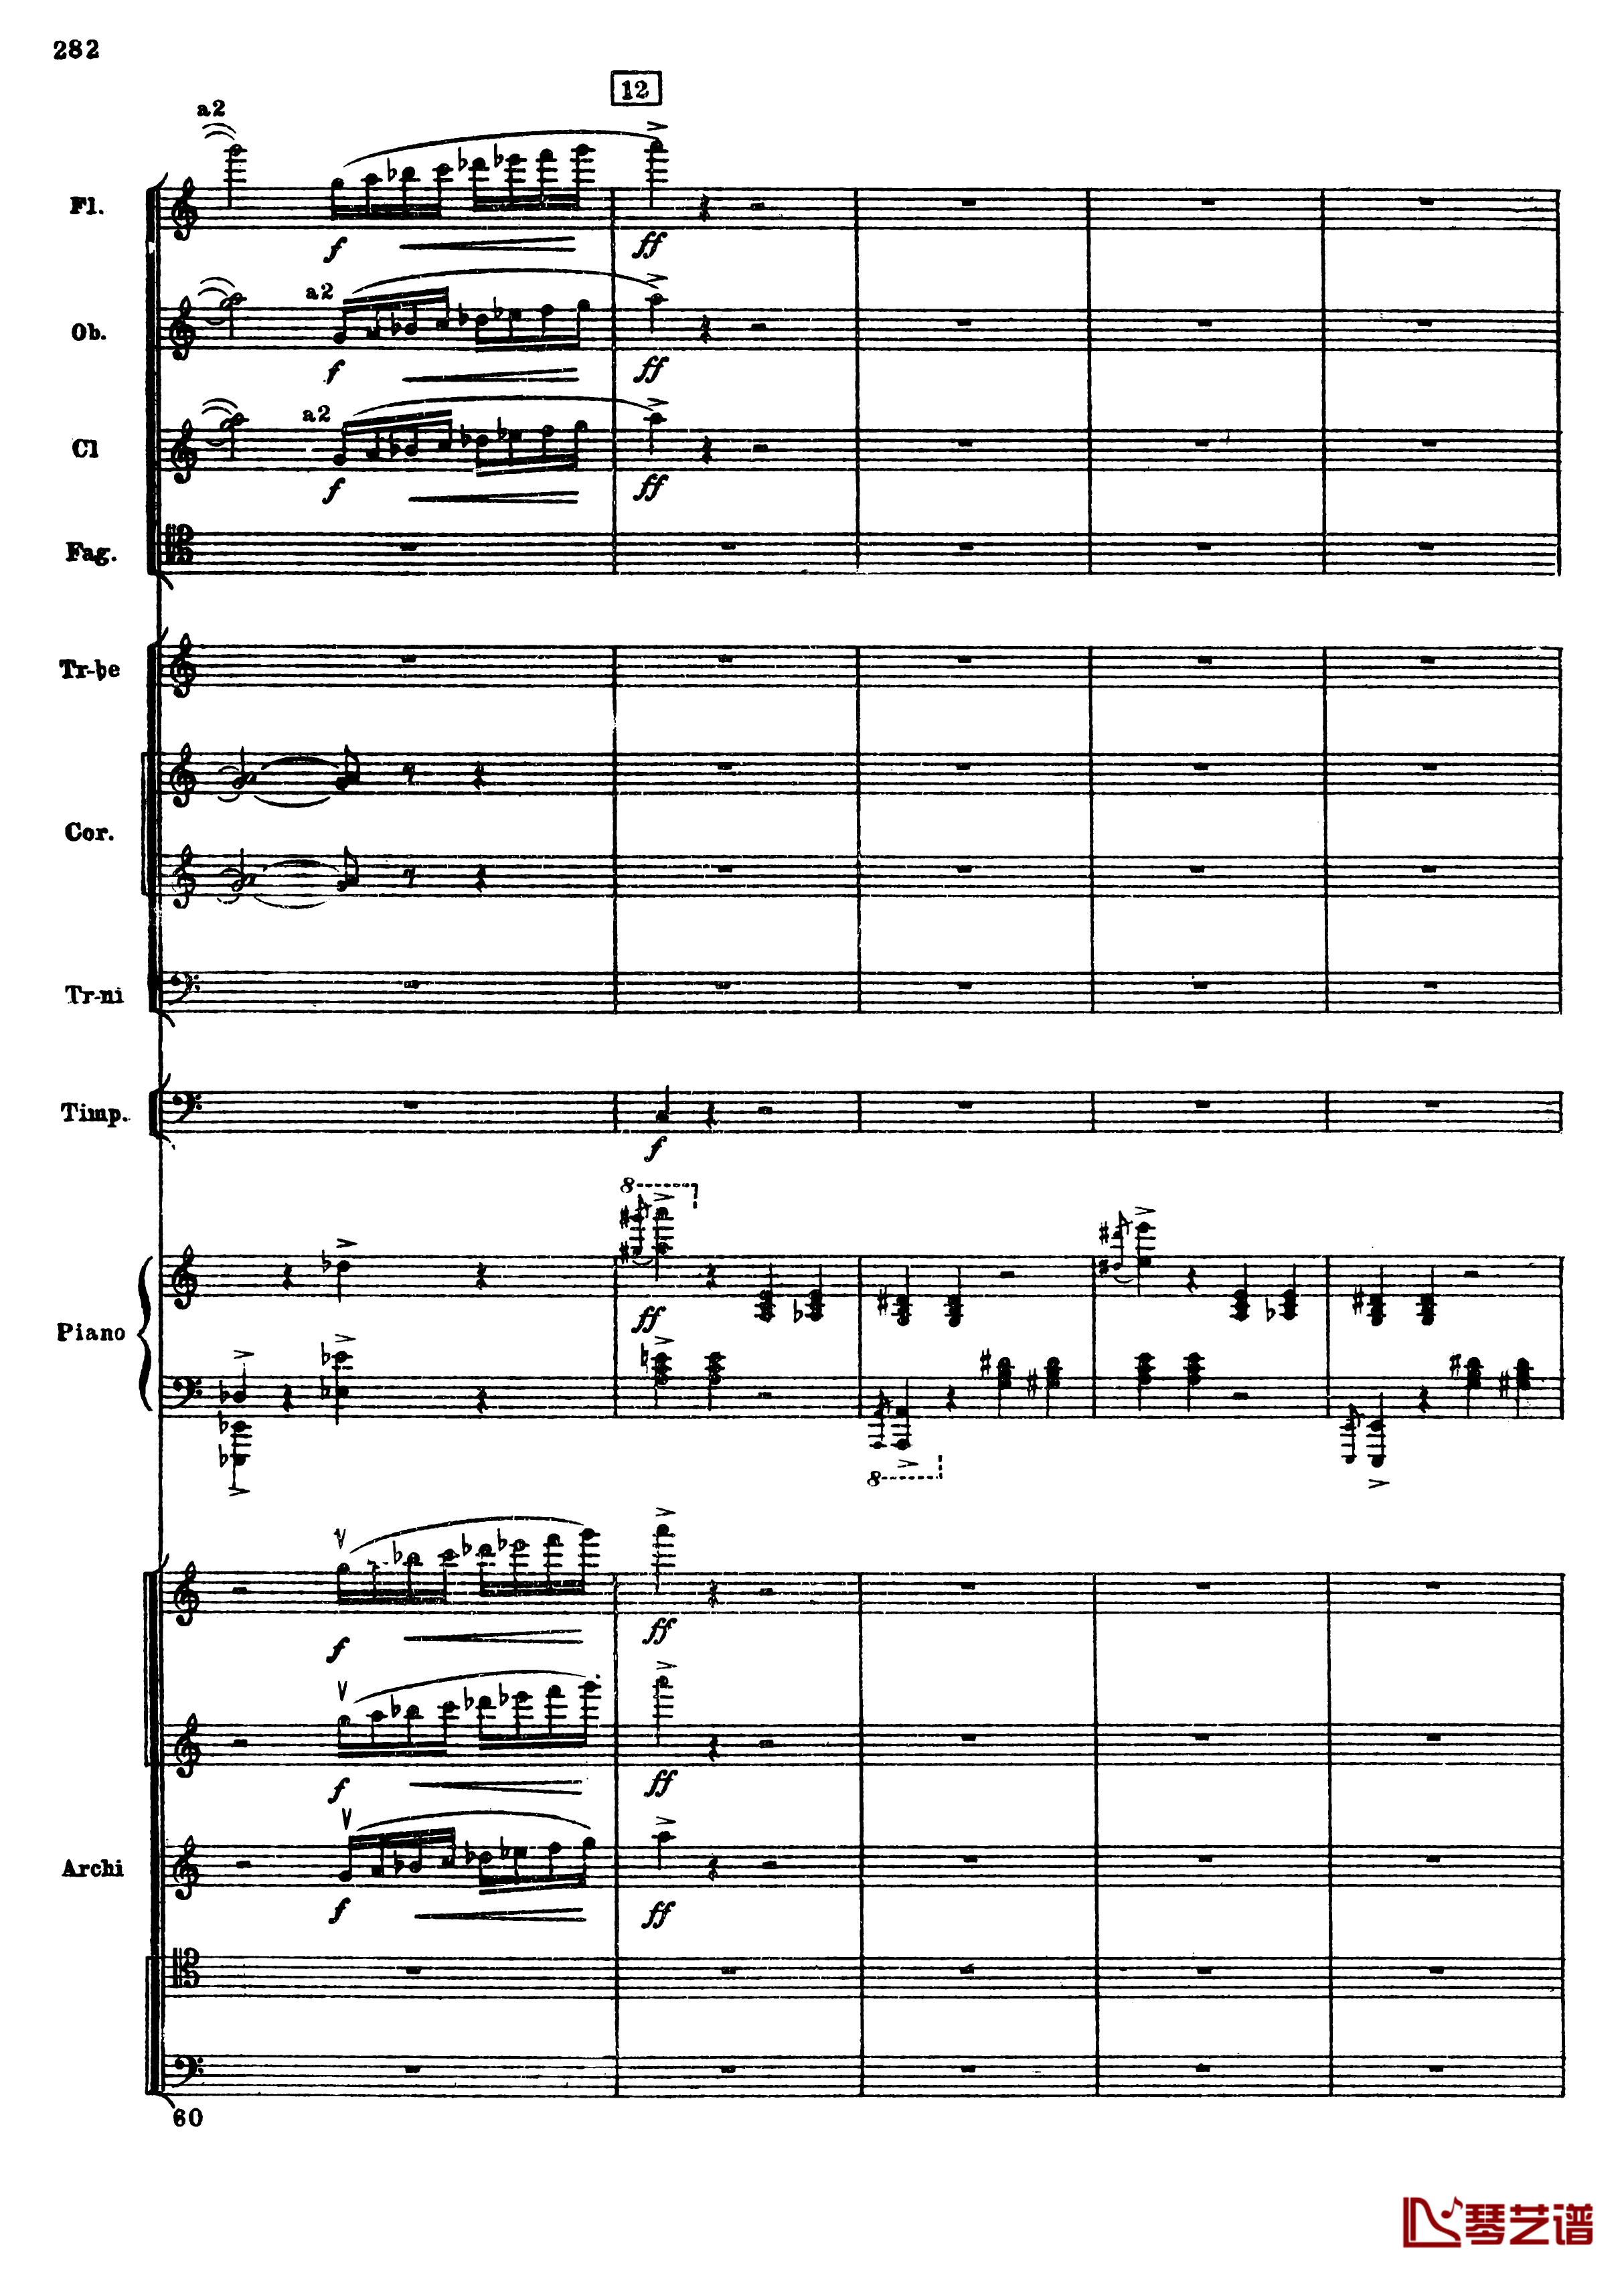 普罗科菲耶夫第三钢琴协奏曲钢琴谱-总谱-普罗科非耶夫14